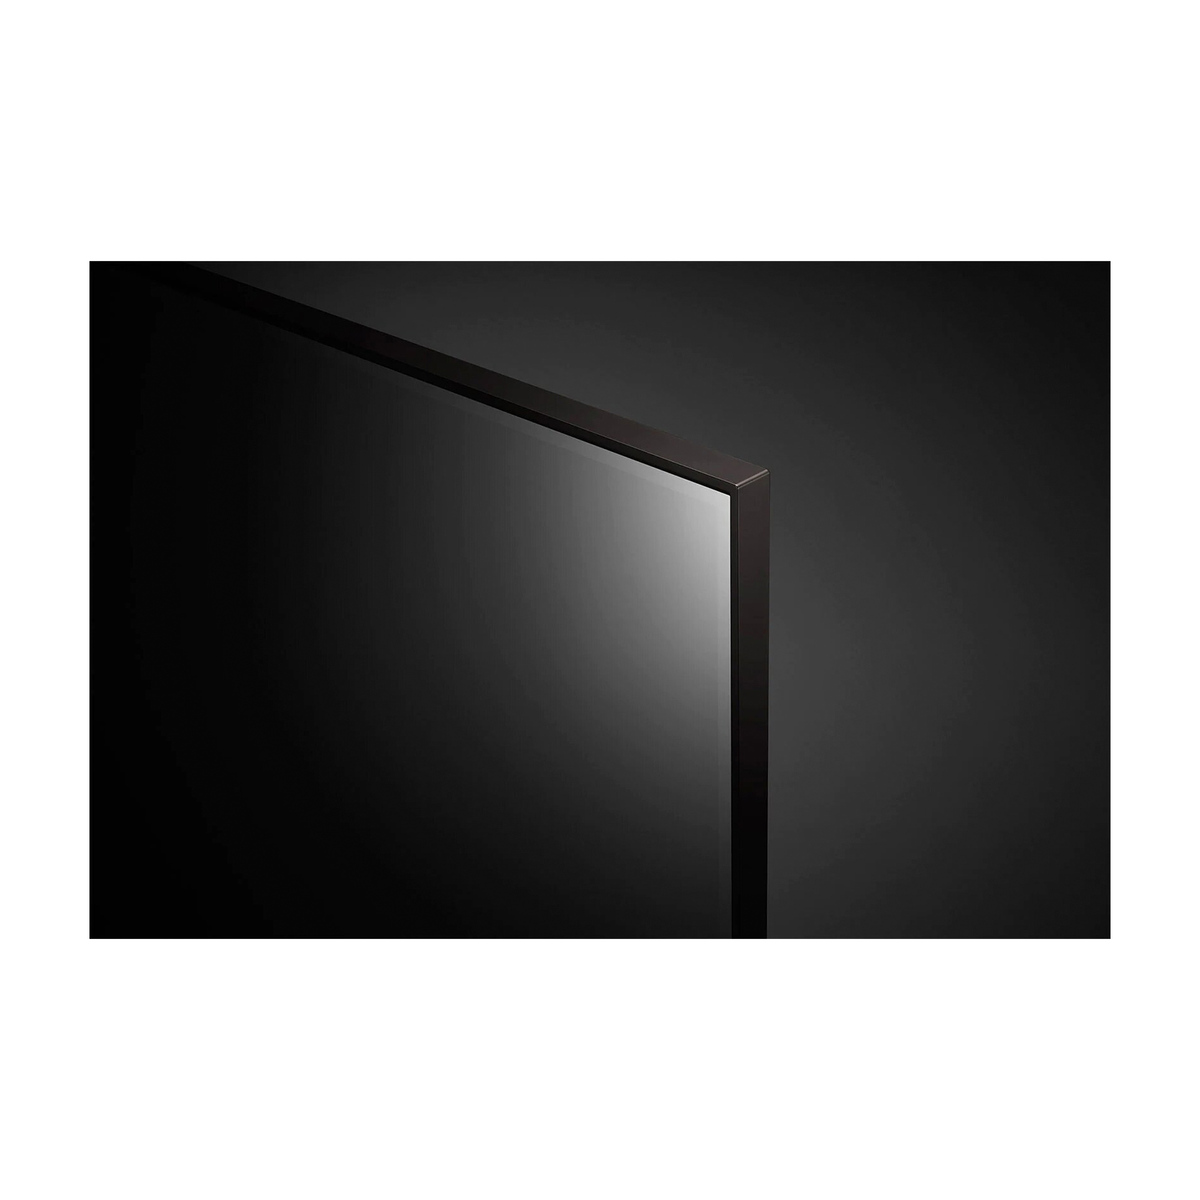 إل جي تلفزيون يو اتش دي فور كيه 86 بوصة UP80 Series NEW 2021 Cinema Screen Design 4K Cinema HDR webOS Smart with ThinQ AI